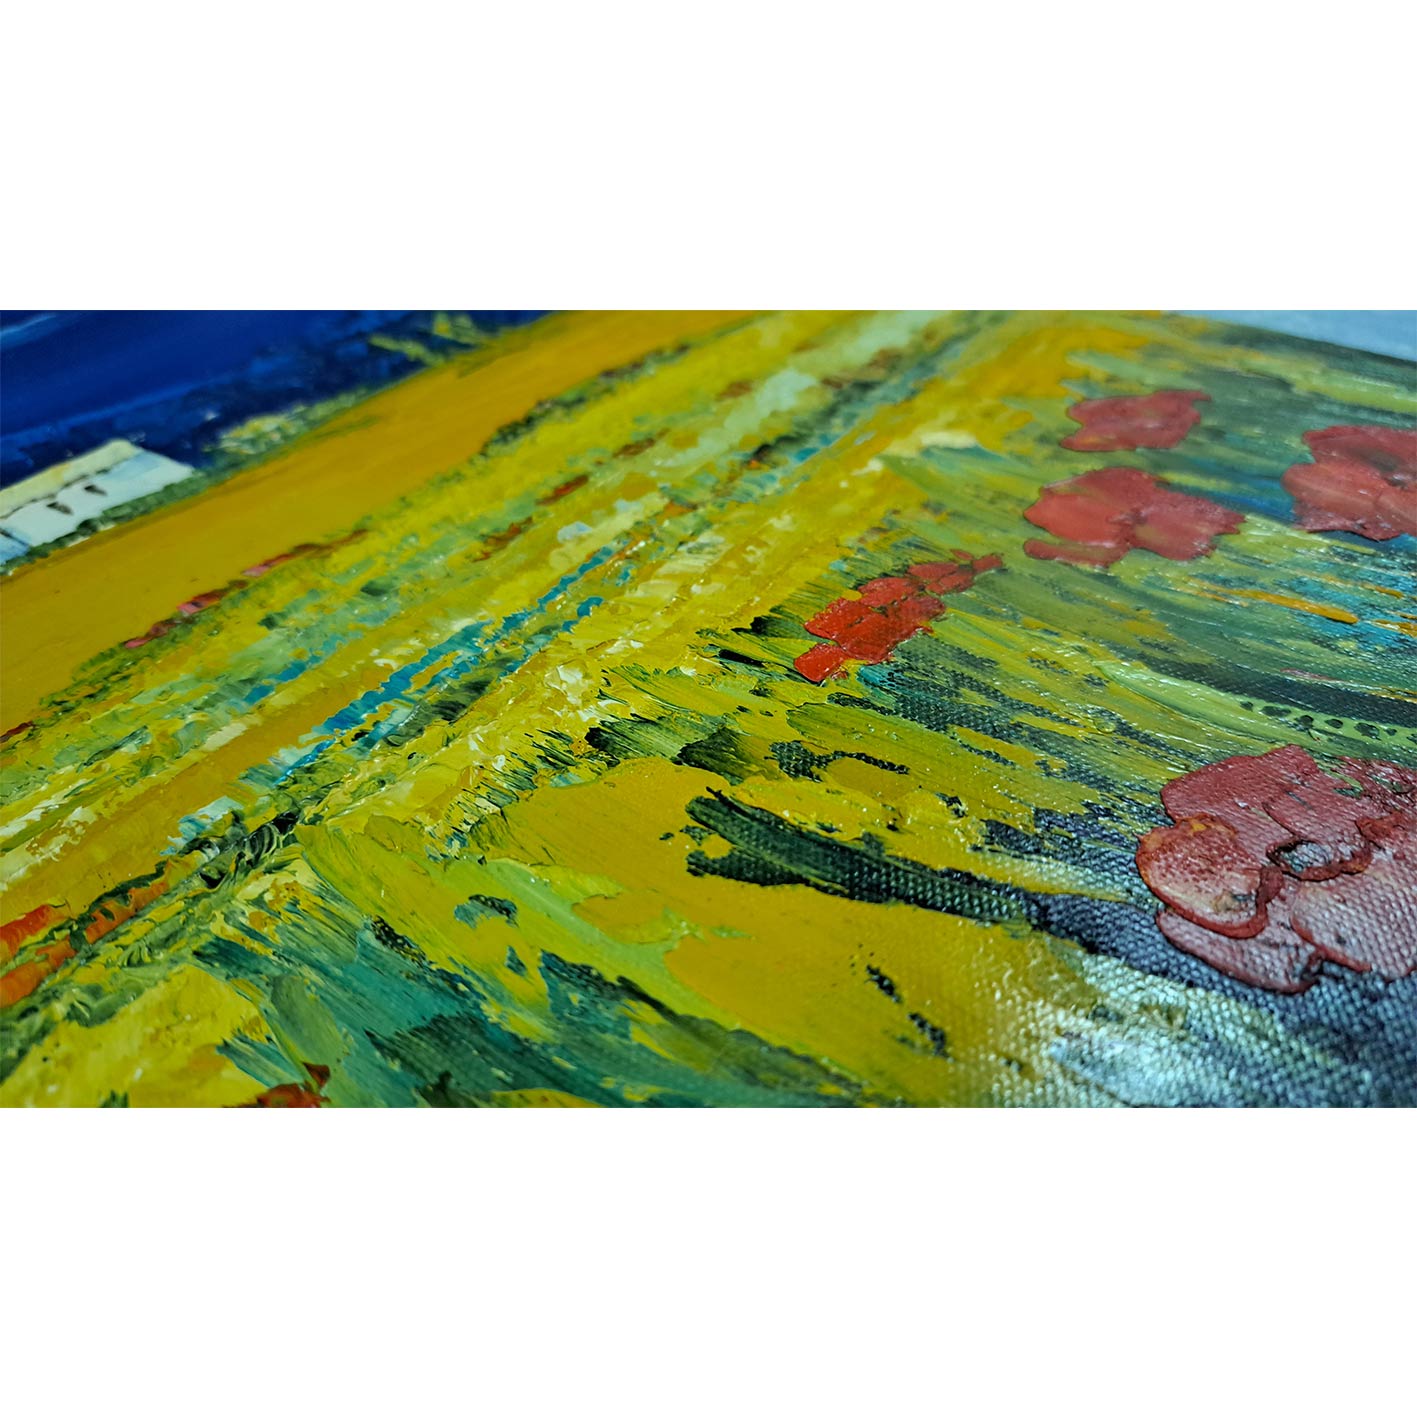 Landscape Diptych Painting 50X60 cm [2 pieces]